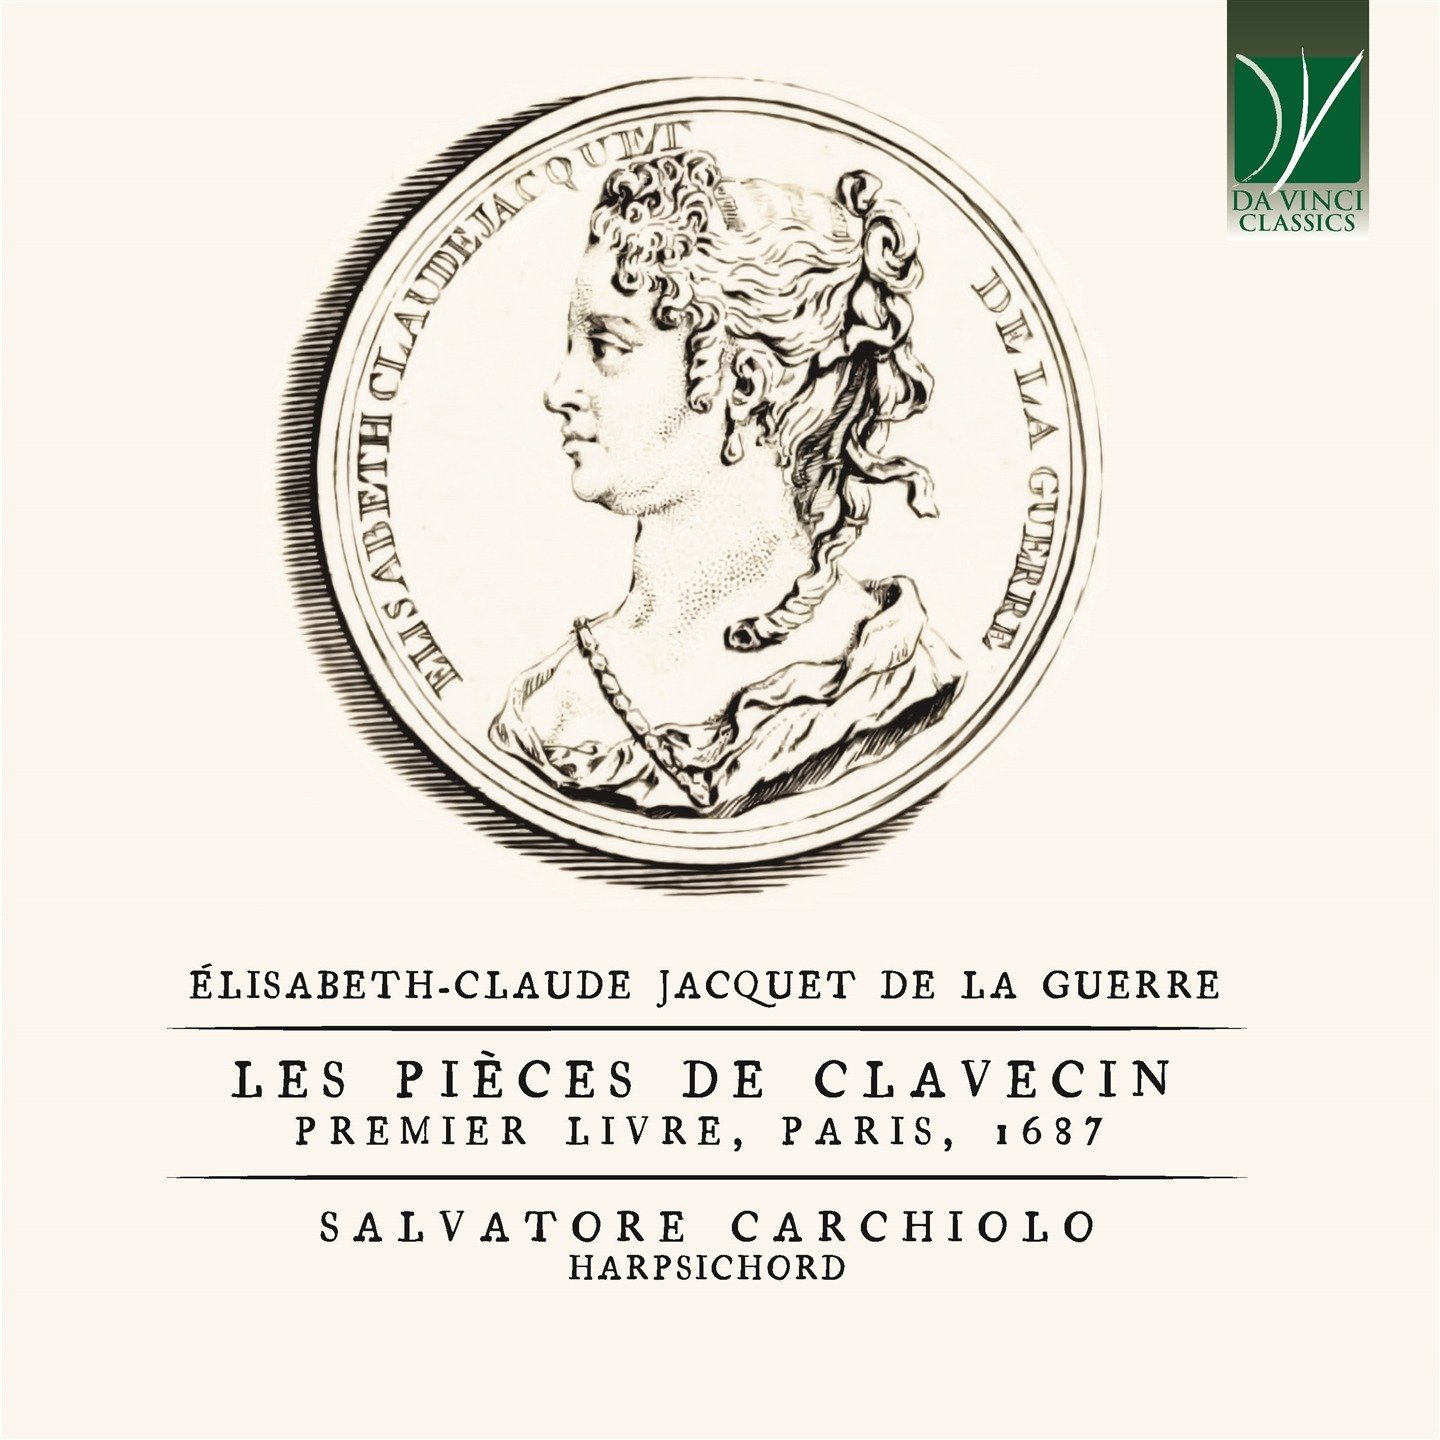 CD Shop - CARCHIOLO, SALVATORE JACQUET DE LA GUERRE: LES PIECES DE CLAVECIN: PREMIER LIVRE, PARIS 1687